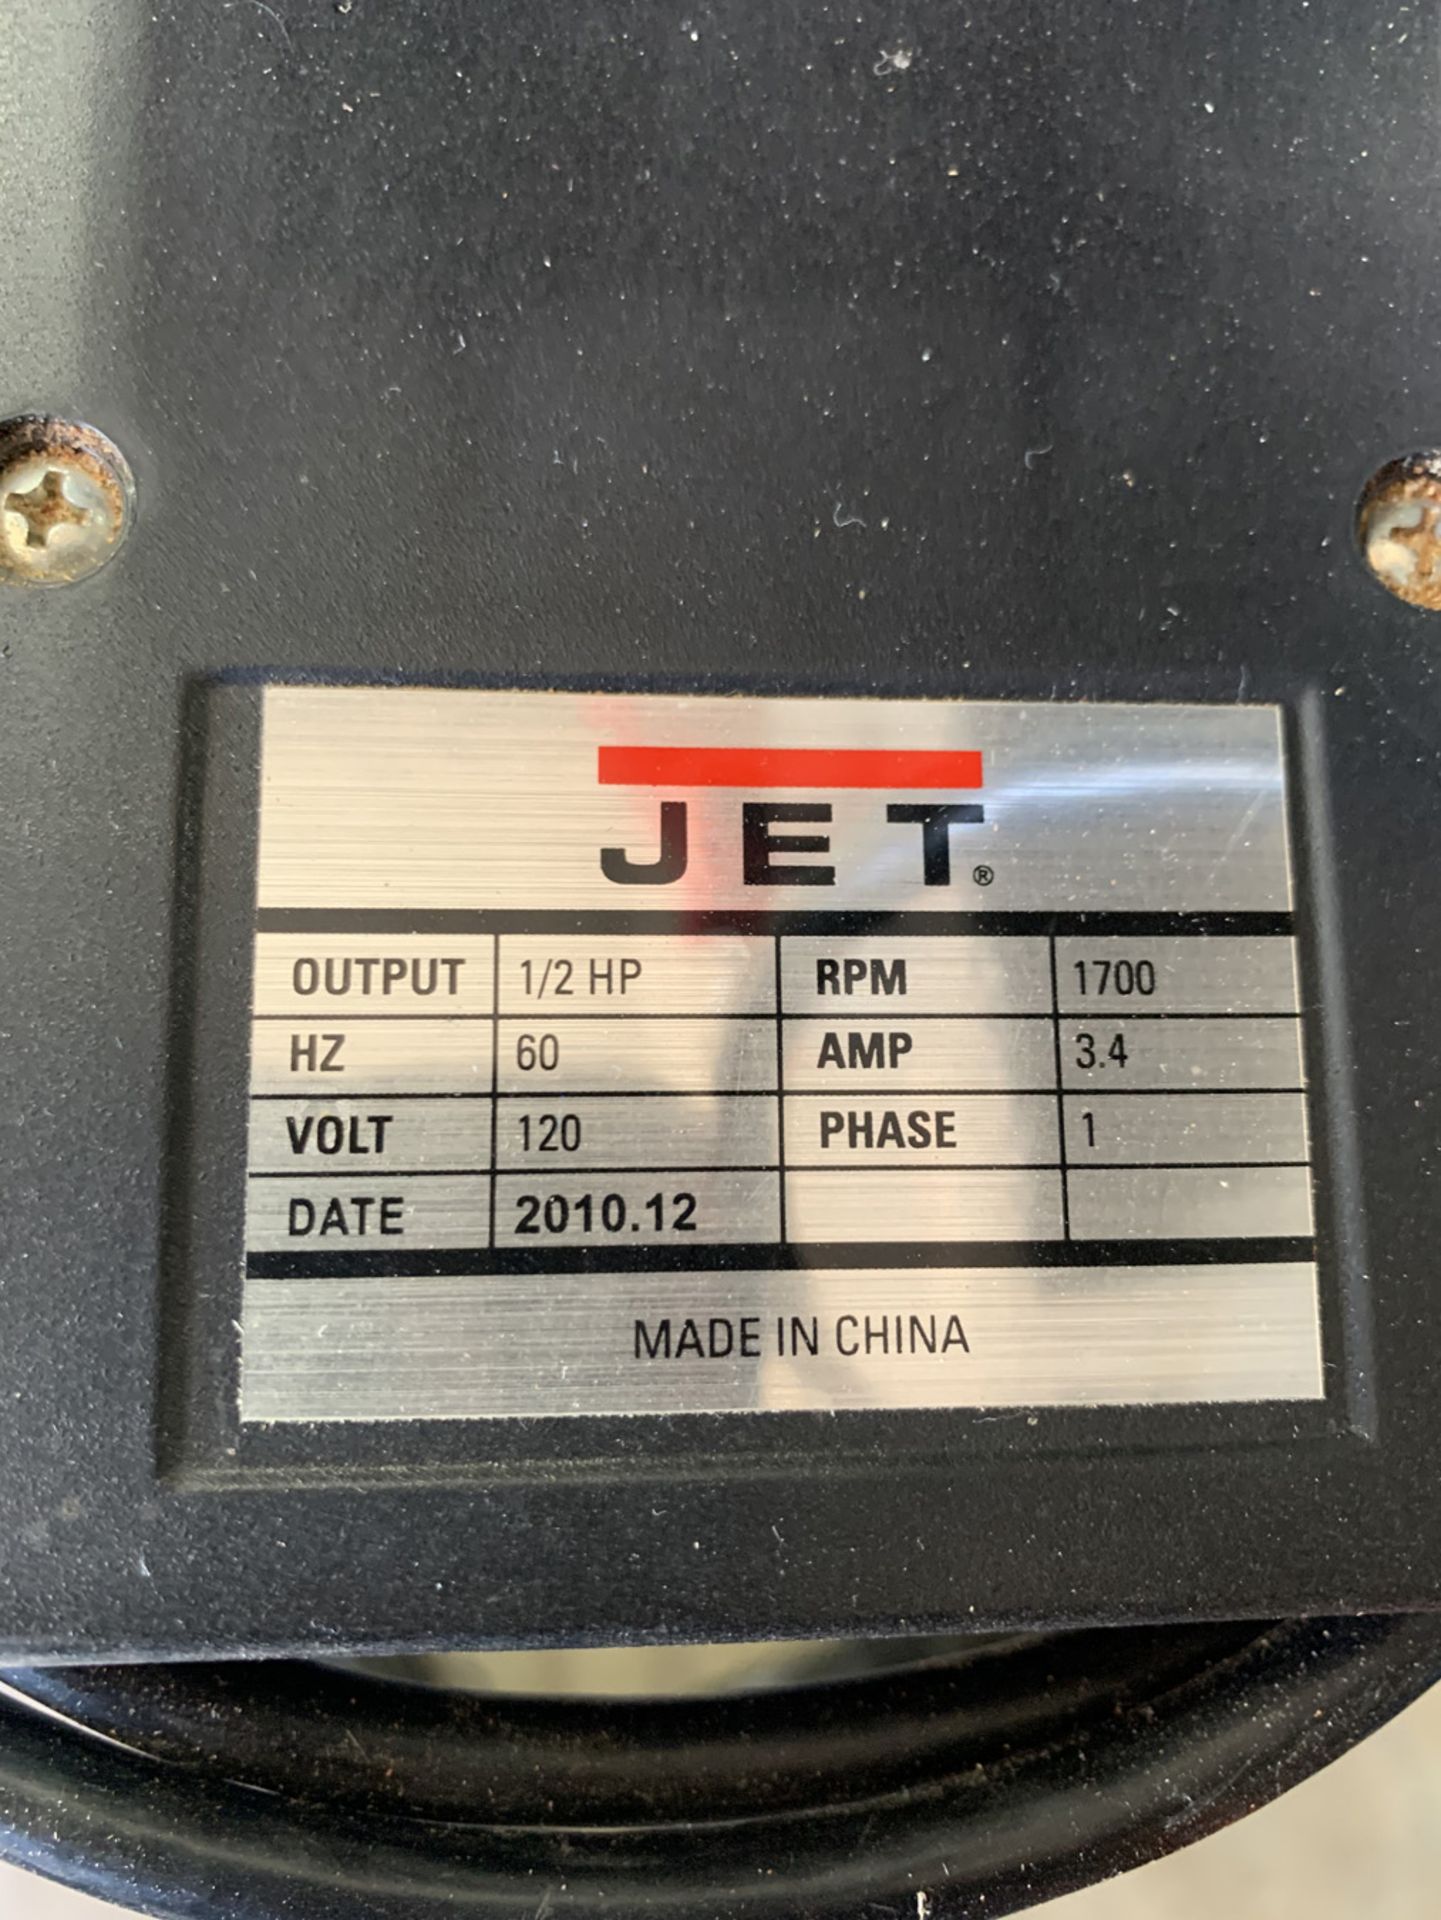 Jet 10" Model JWBS-100S Vertical Bandsaw - Image 9 of 9